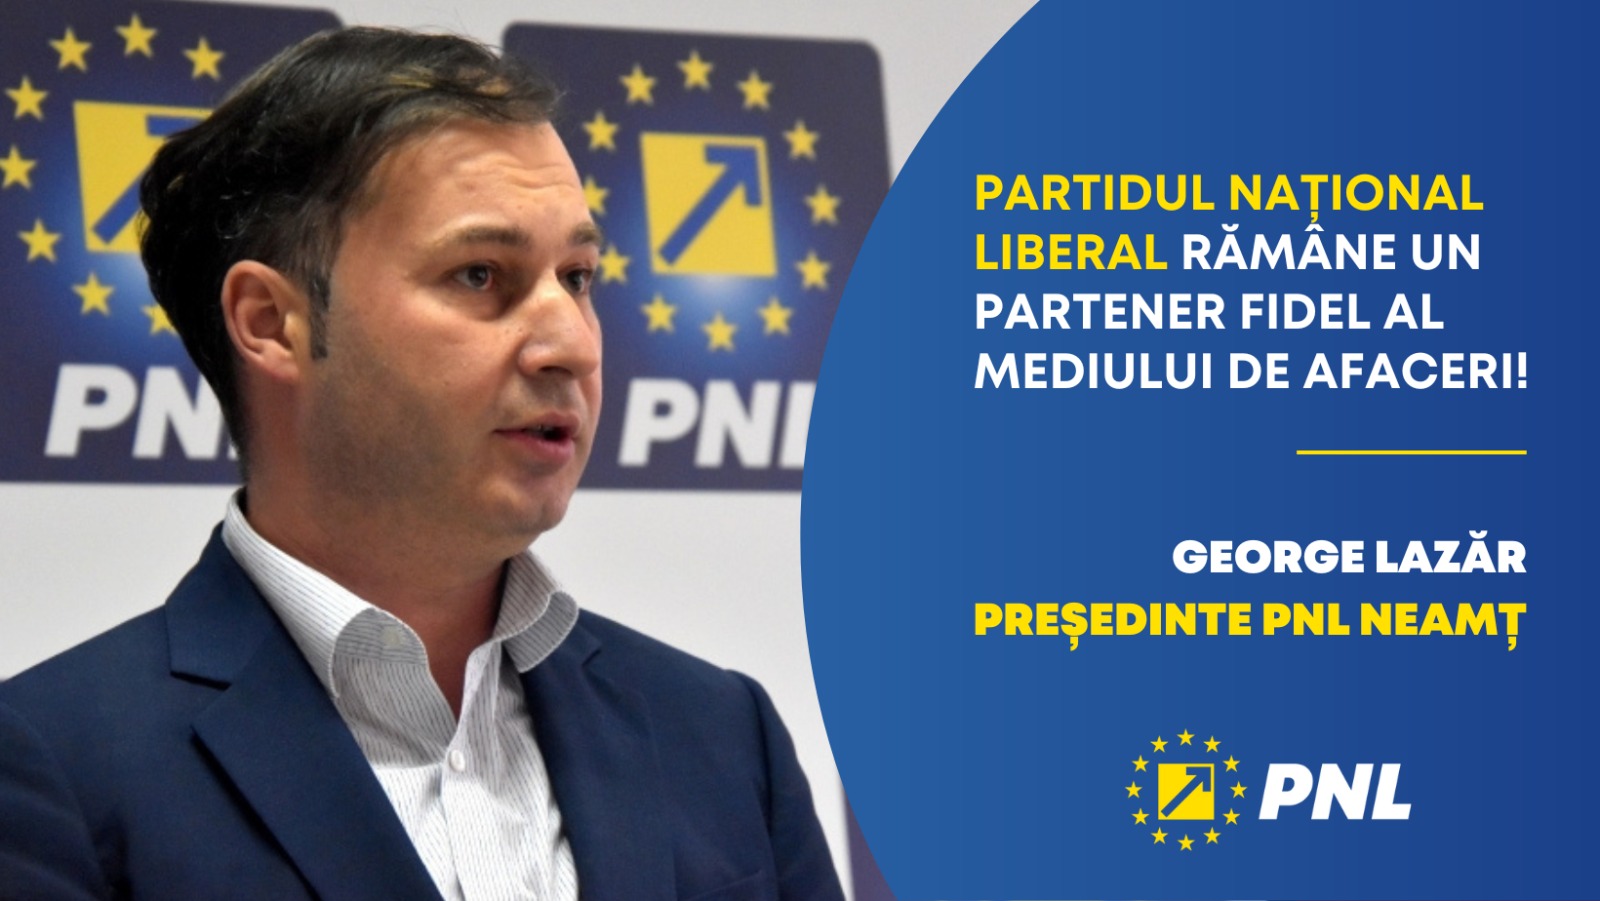 George Lazăr, președinte PNL Neamț: „Partidul Național Liberal rămâne un partener fidel al mediului de afaceri”